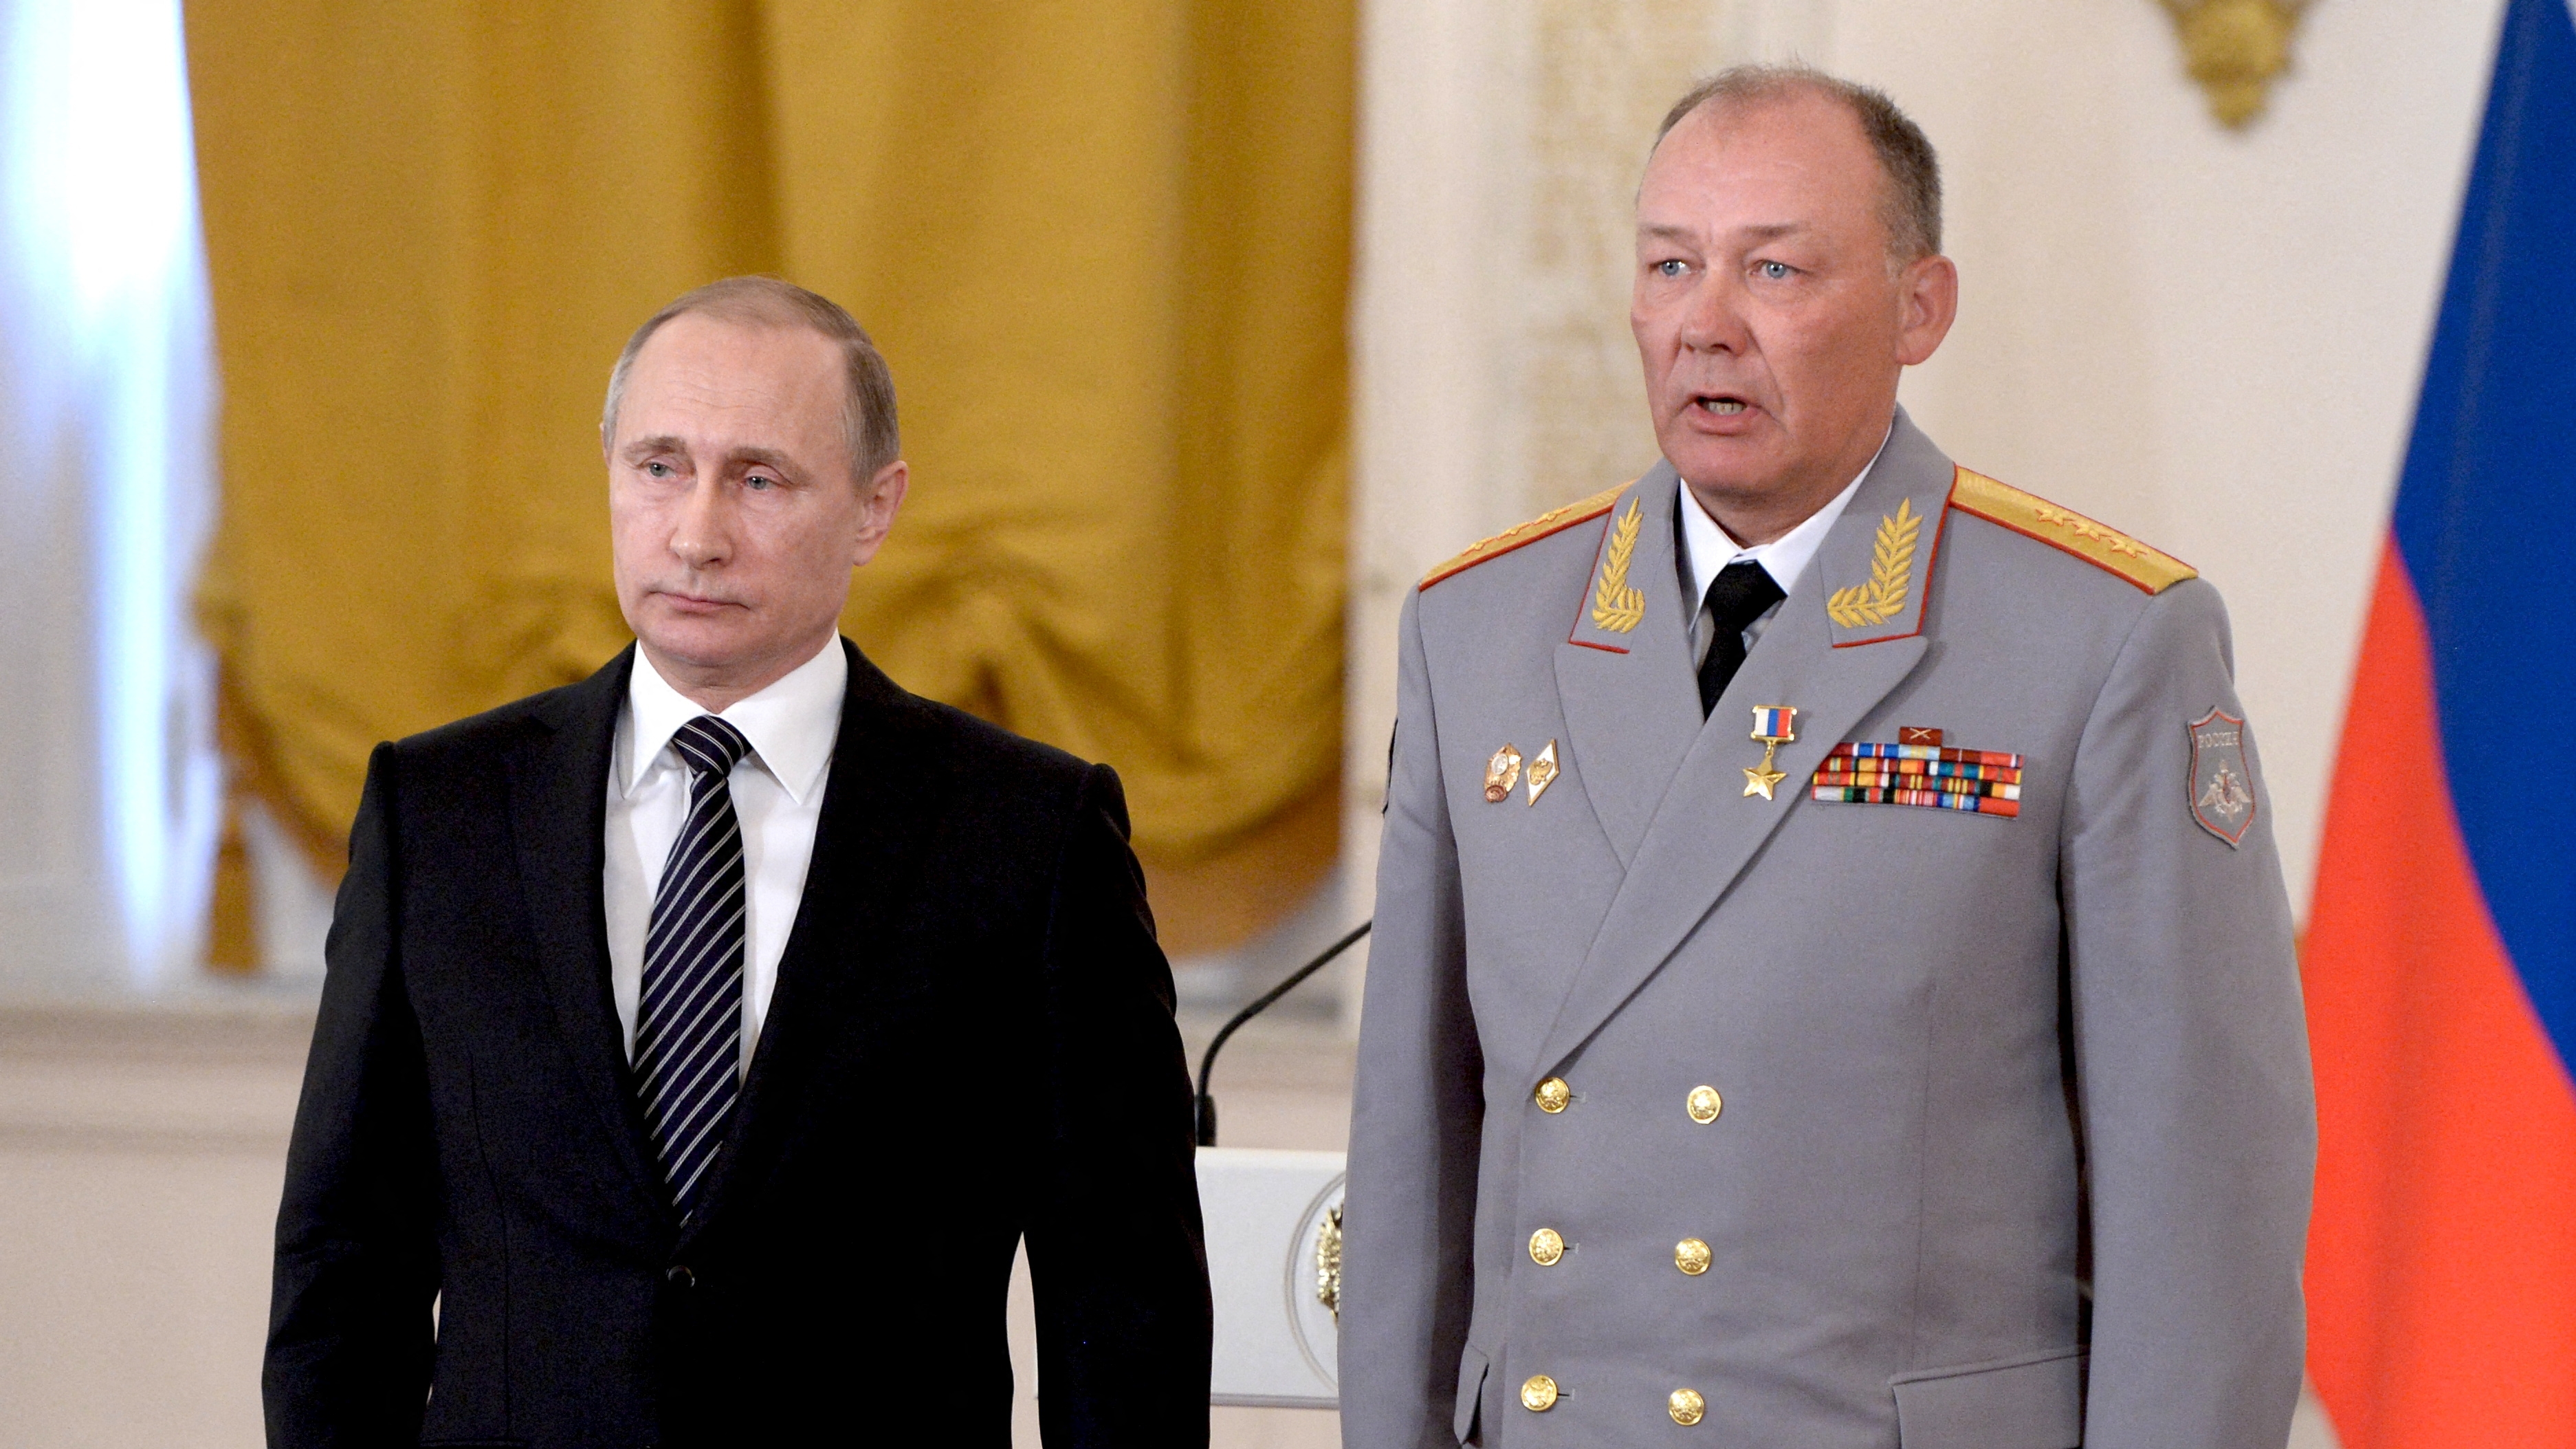 Putin junto al coronale general Alexander Dvornikov. Dvornikov será reemplazado por Surovikin (Sputnik/Alexey Nikolsky/Kremlin via REUTERS)